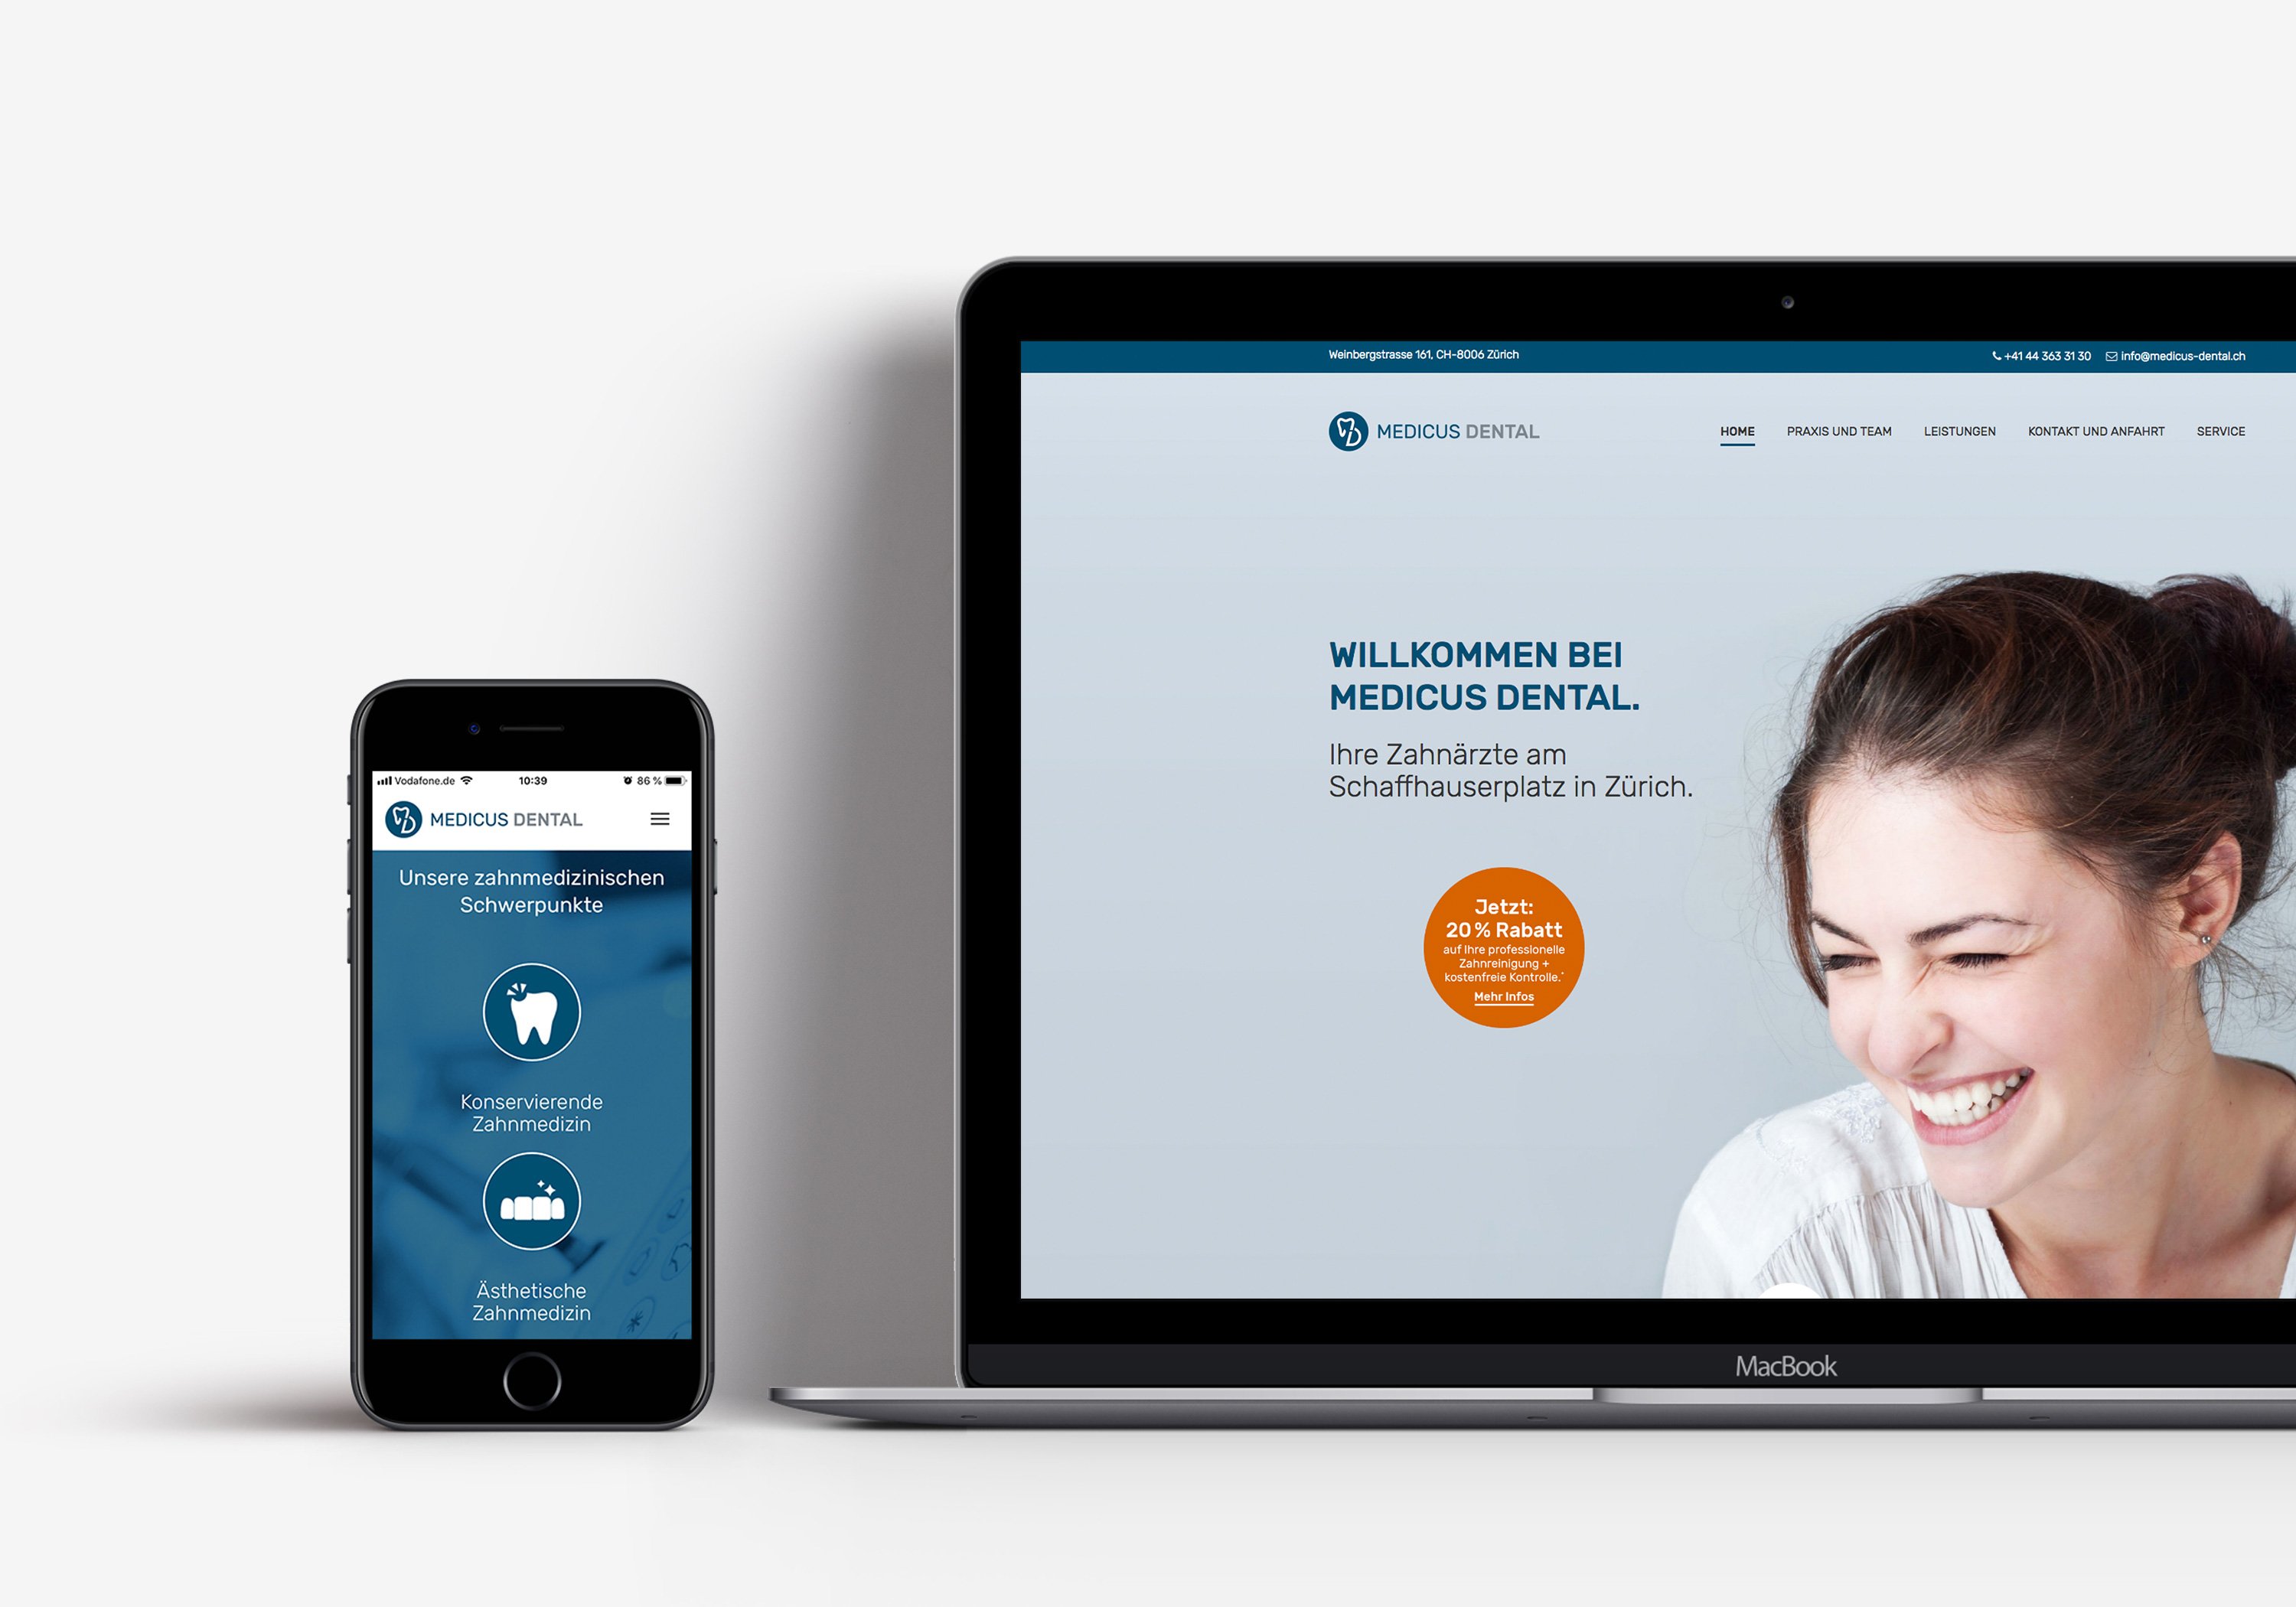 Excite Werbeagentur  Medicus Dental  Website auf Smartphone und Laptop